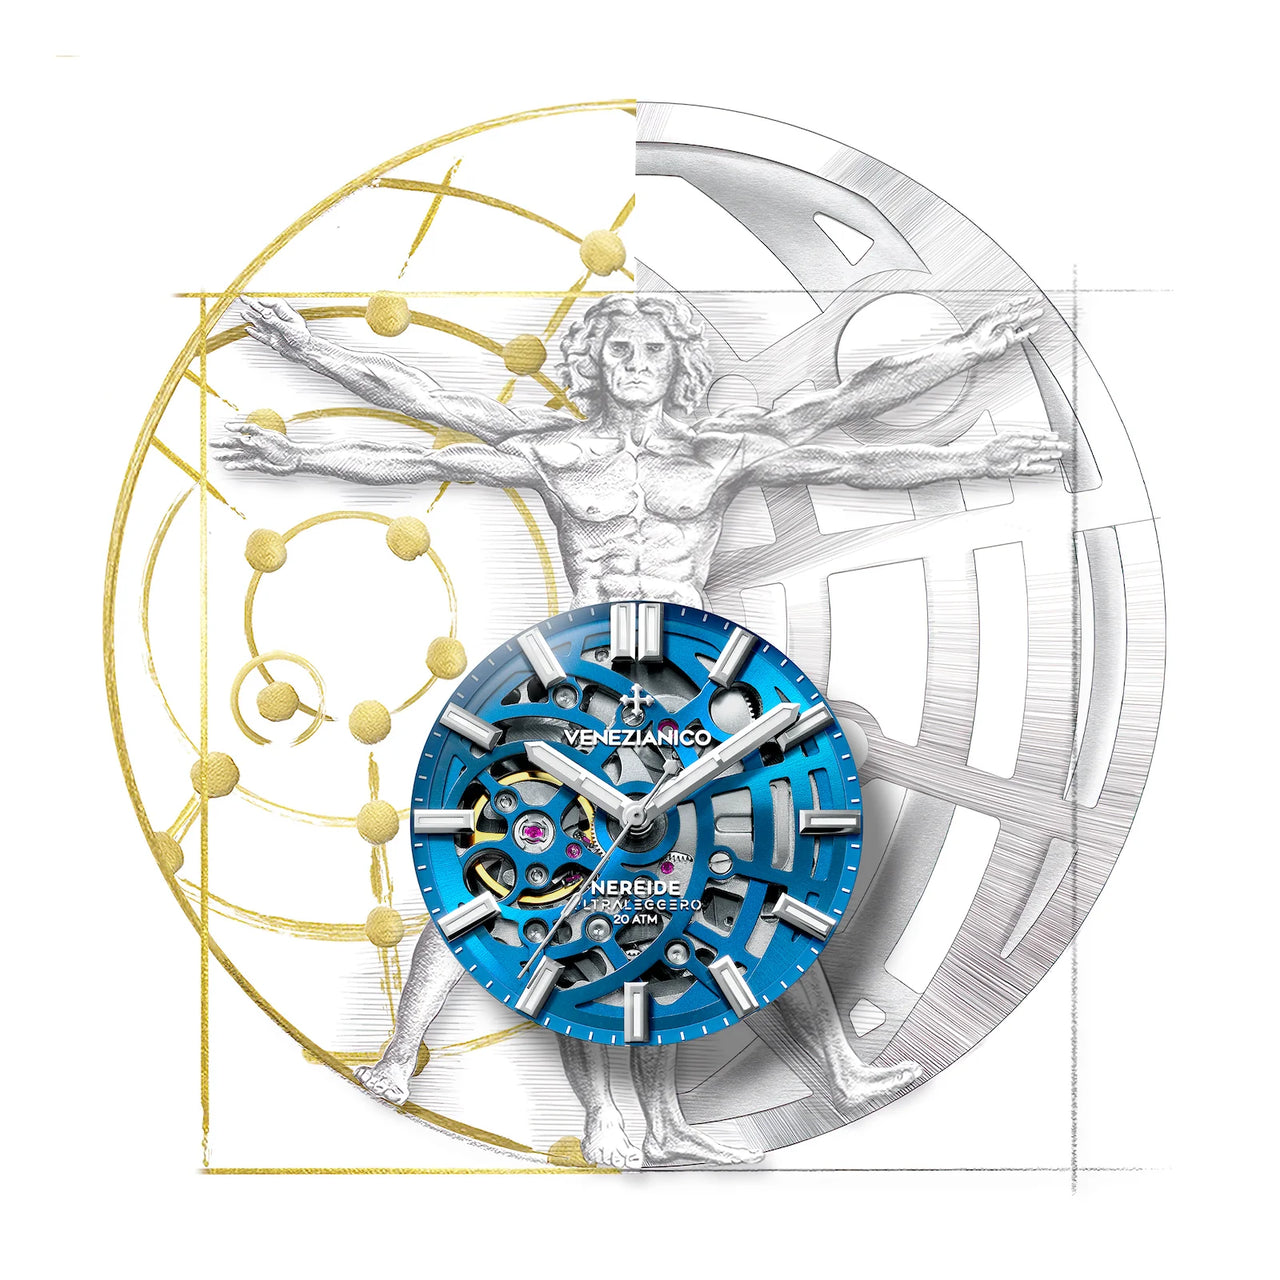 Venezianico Automatic Watch Nereide UltraLeggero 42 Skeleton Aqua 3921506